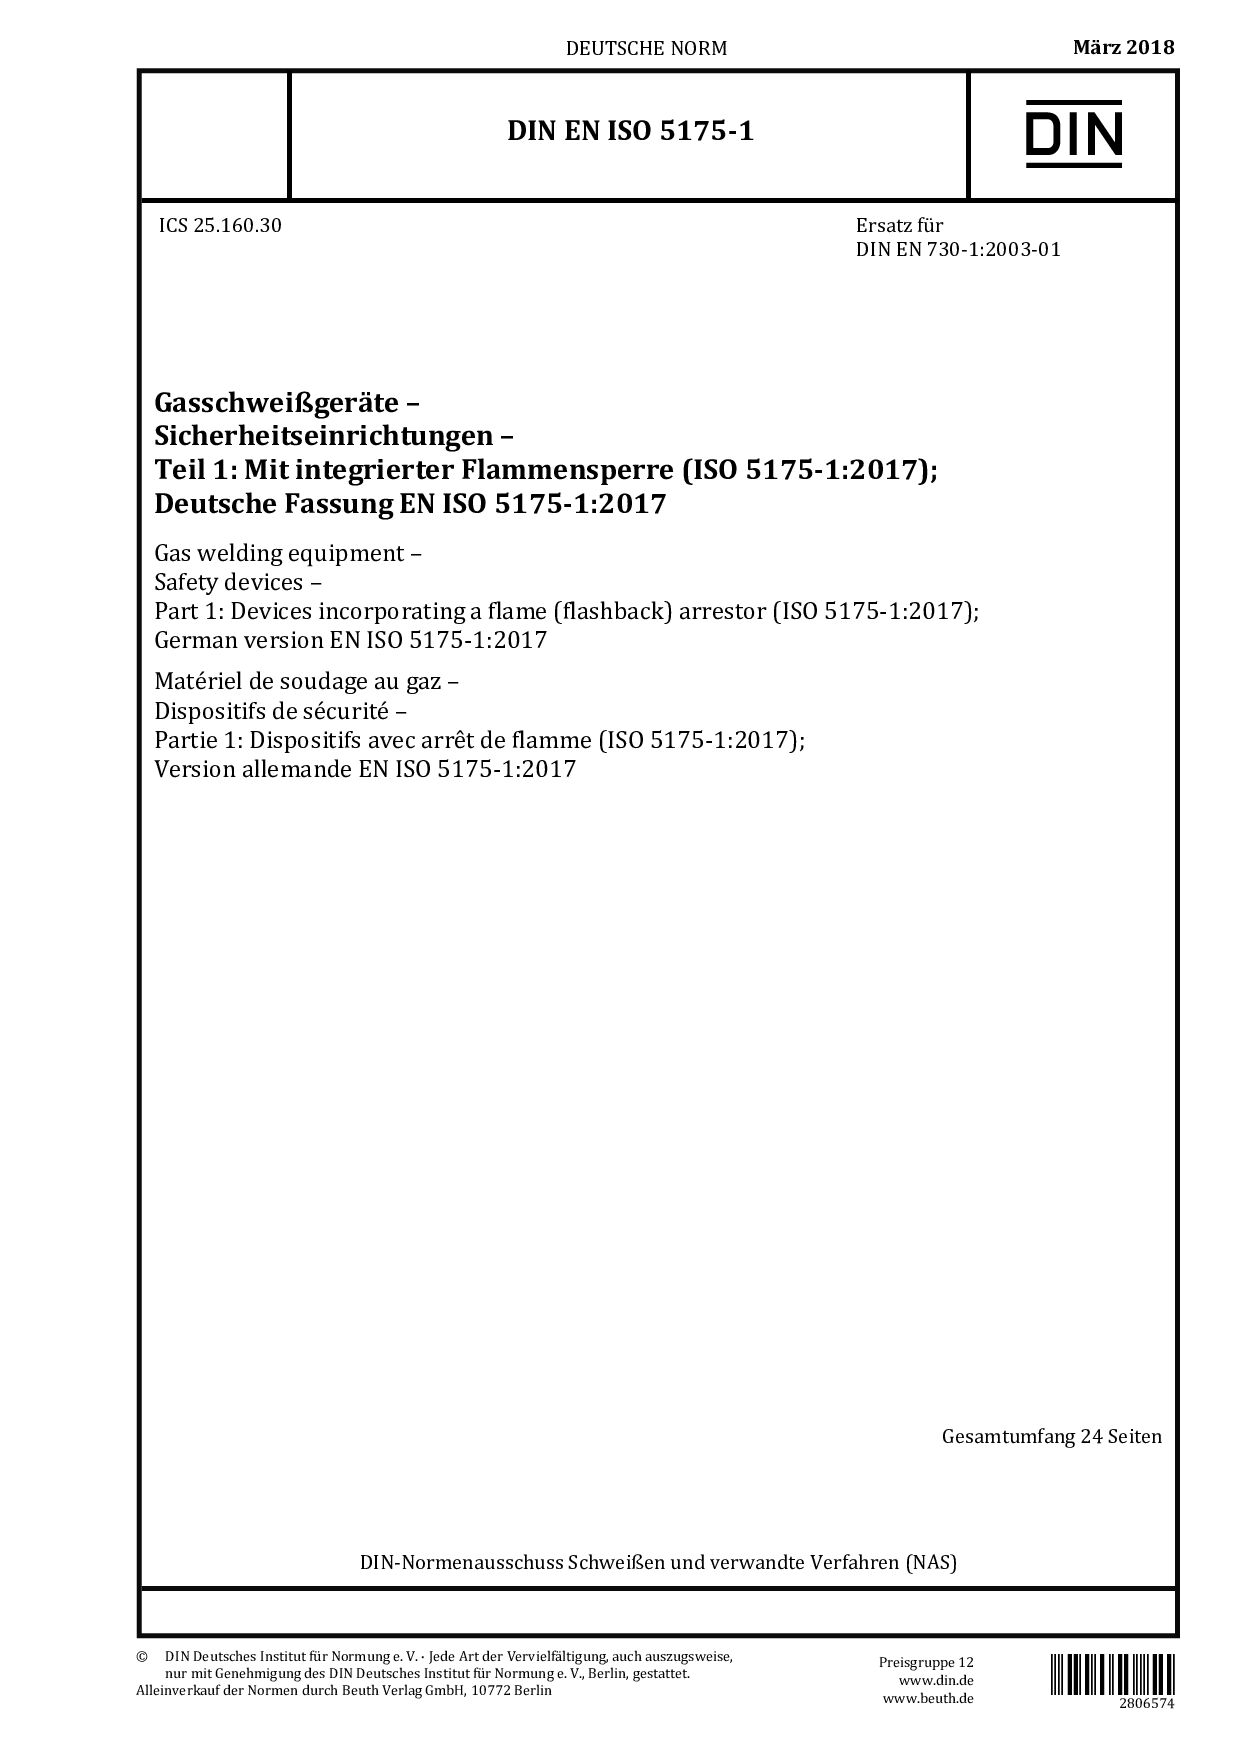 DIN EN ISO 5175-1:2018封面图